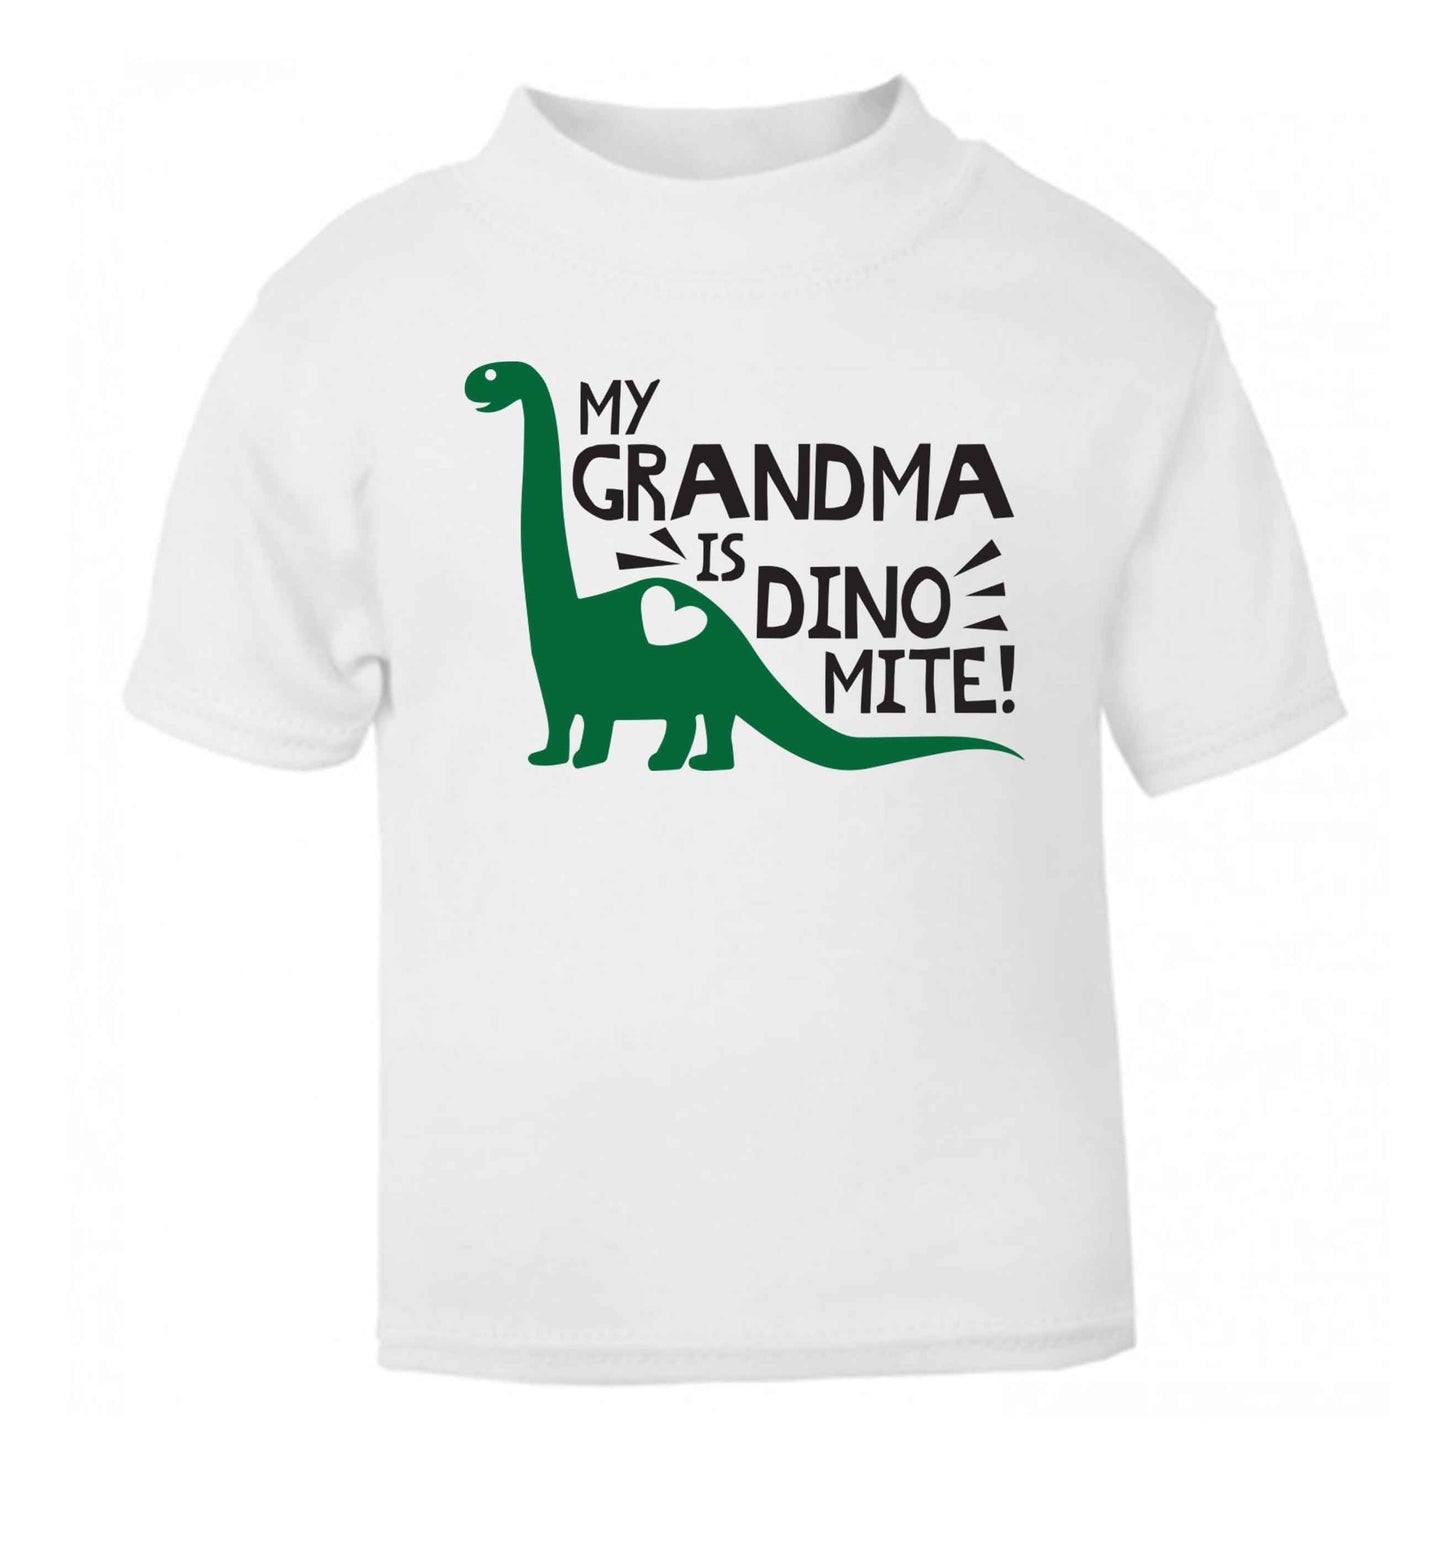 My grandma is dinomite! white Baby Toddler Tshirt 2 Years